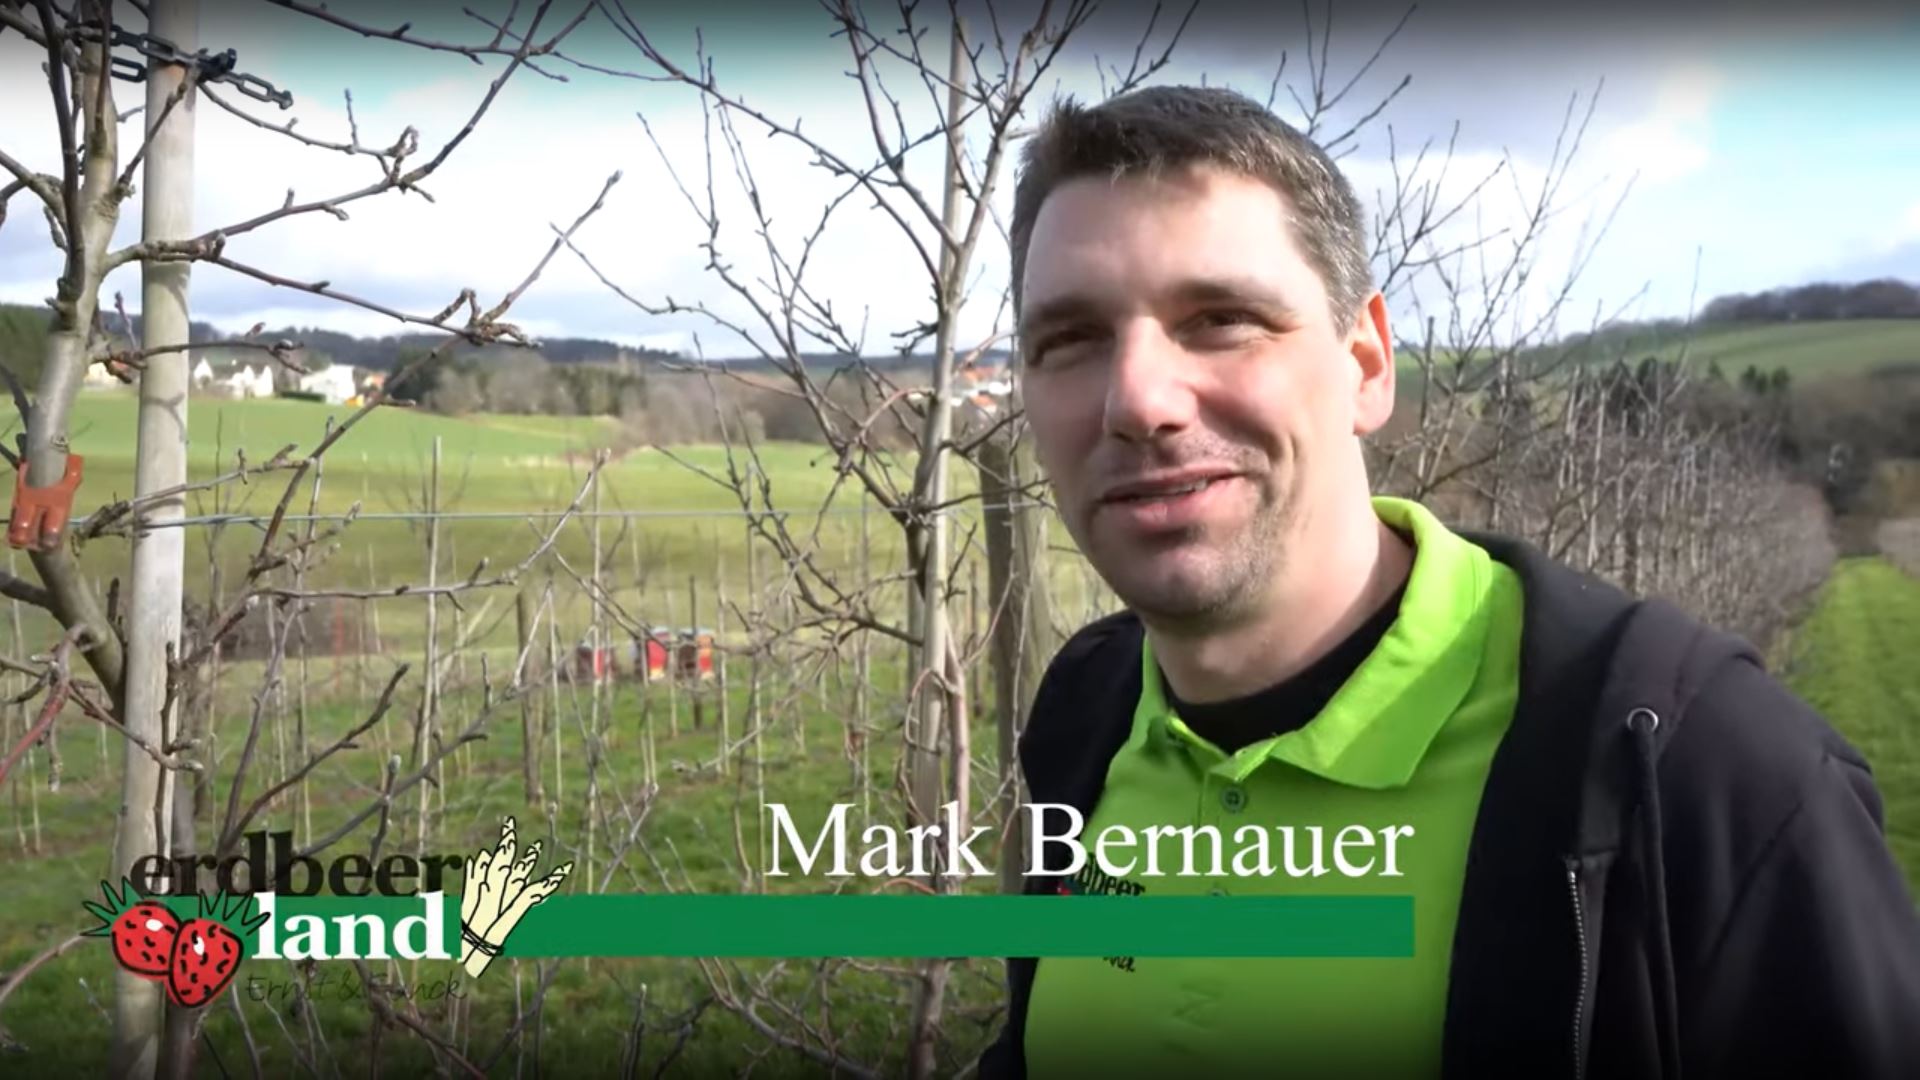 Mark Bernauer in einem Reportage-Video von Erdbeerland Ernst & Funck